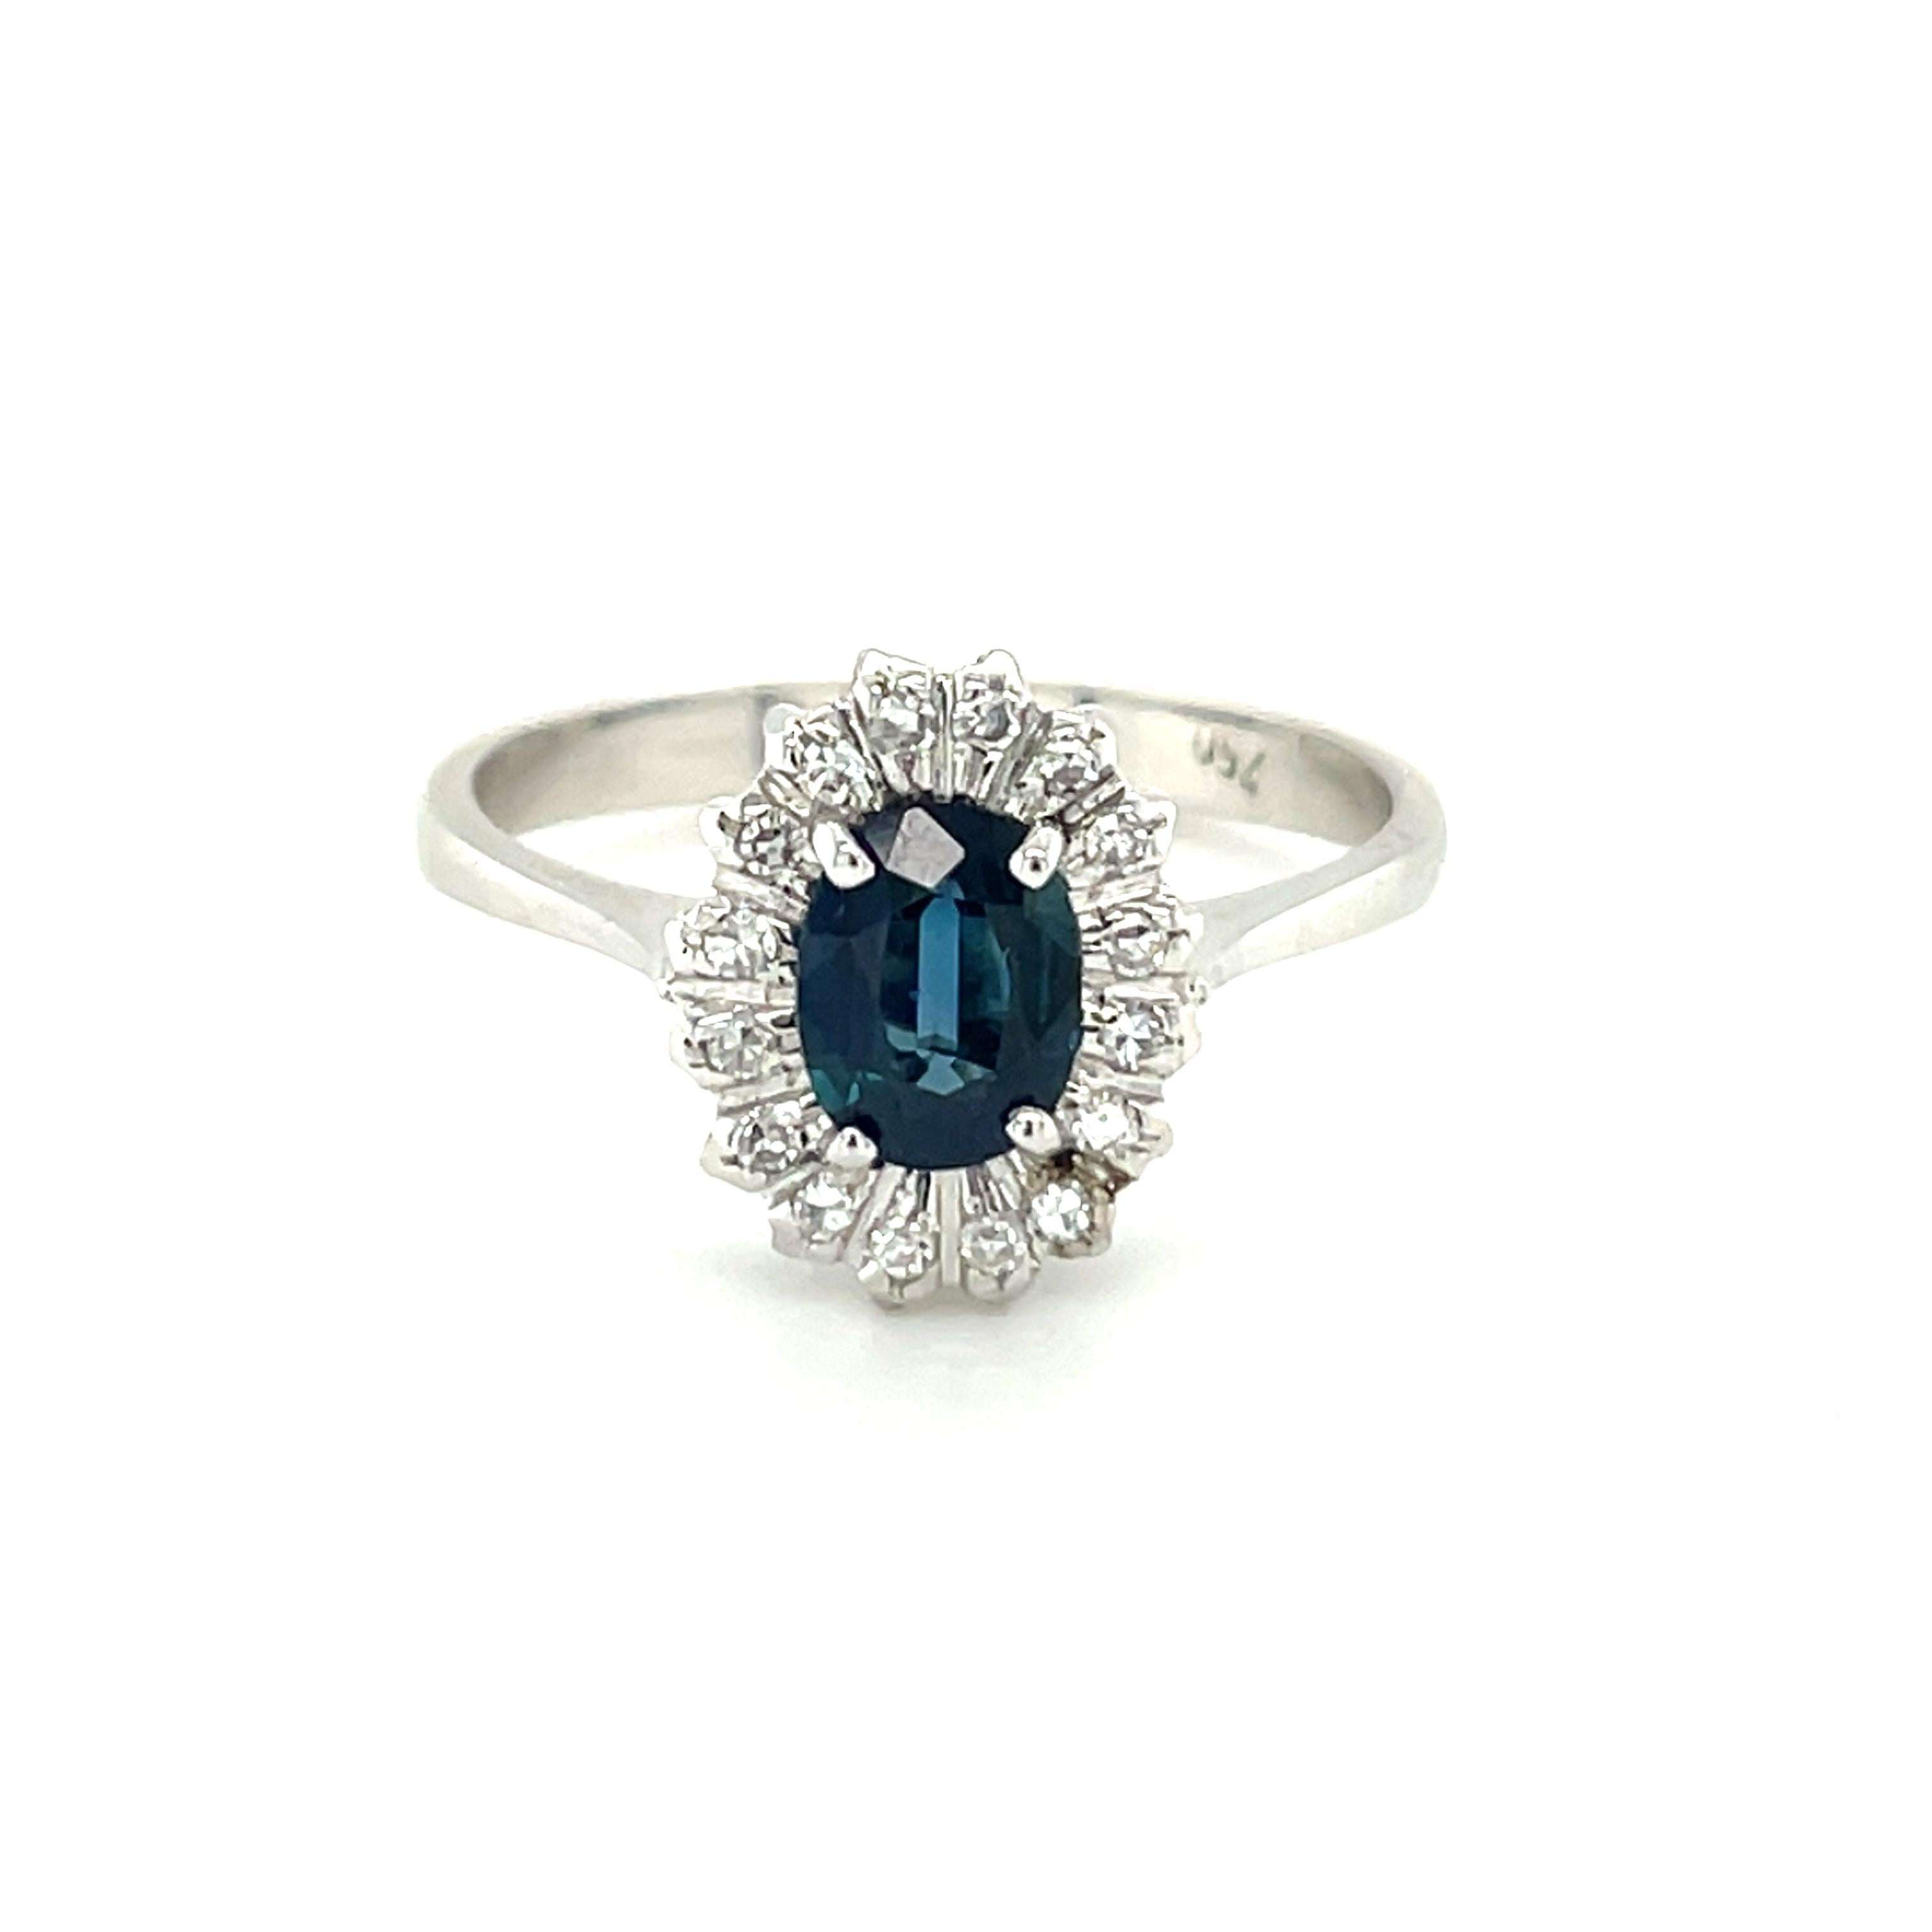 Dieser elegante Ring aus 18 Karat Weißgold ist aus unserer Timeless Collection'S. Es besteht aus einem schönen blauen Saphir in ovaler Form von 0,75 Karat, verziert mit runden weißen Diamanten von insgesamt 0,16 Karat. Das Gesamtgewicht des Metalls